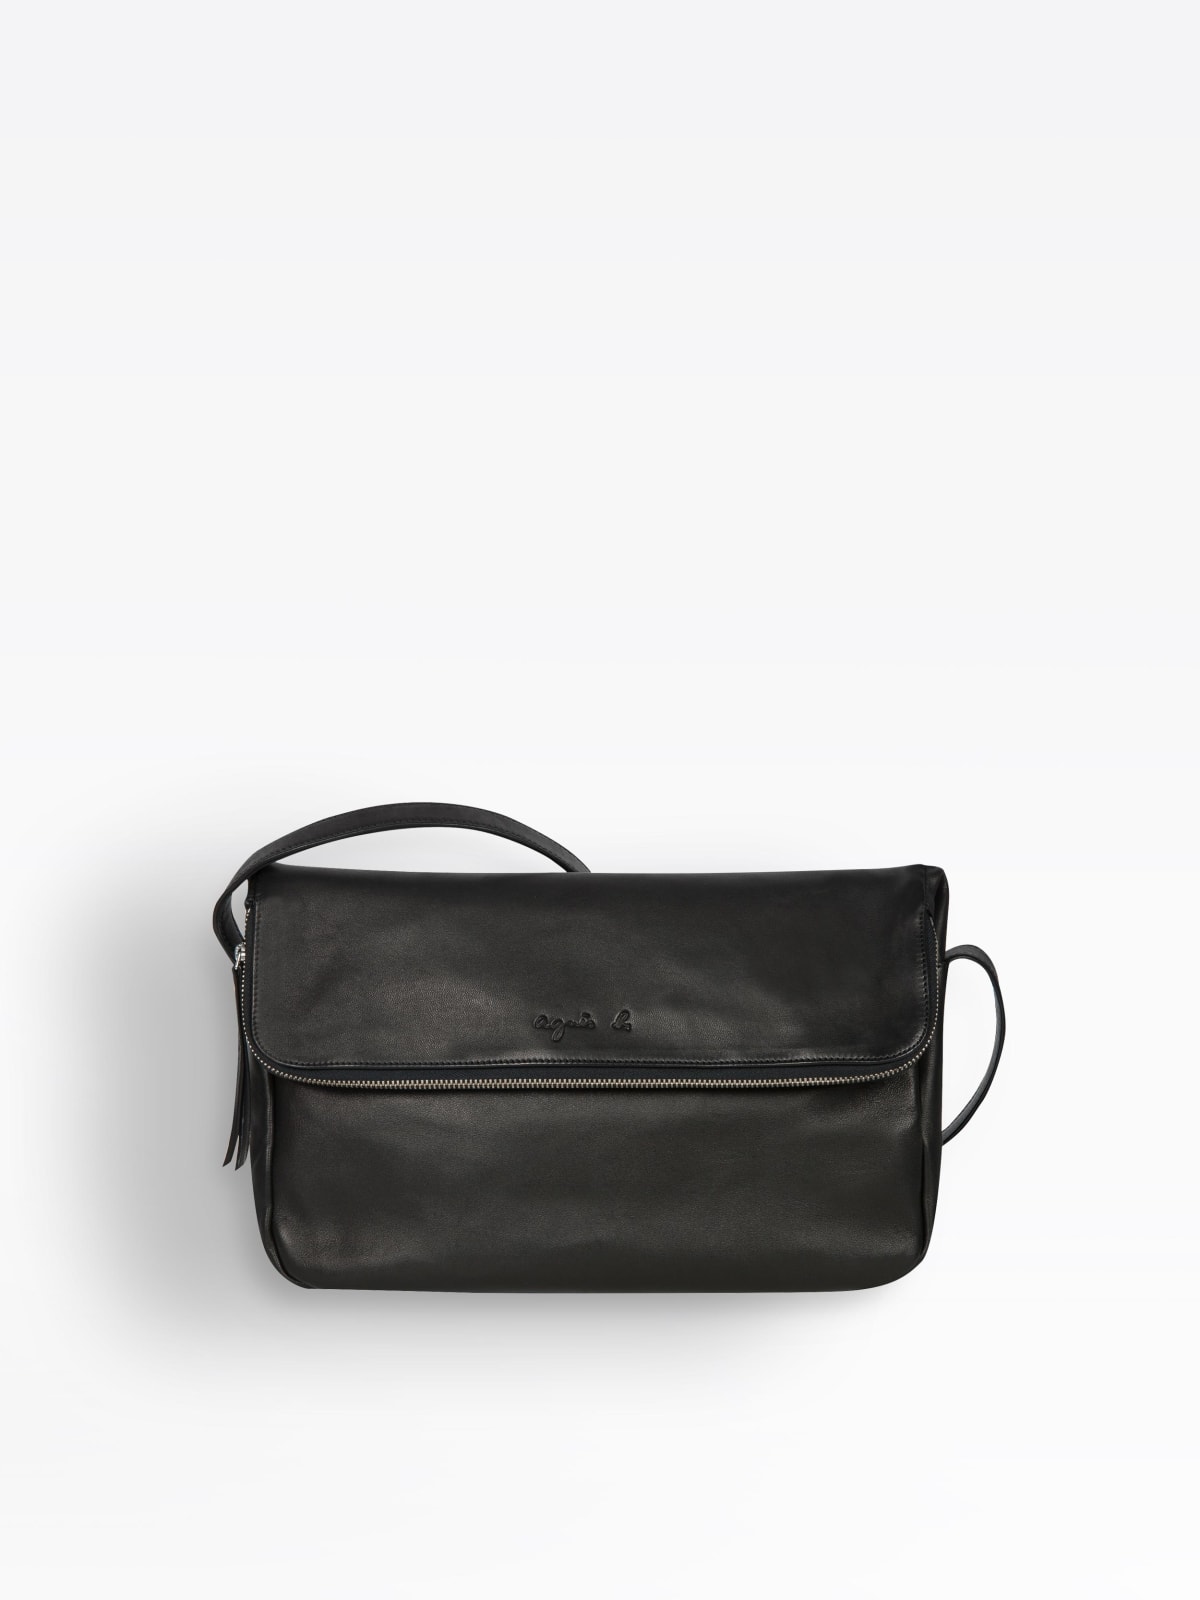 black leather Amelia bag